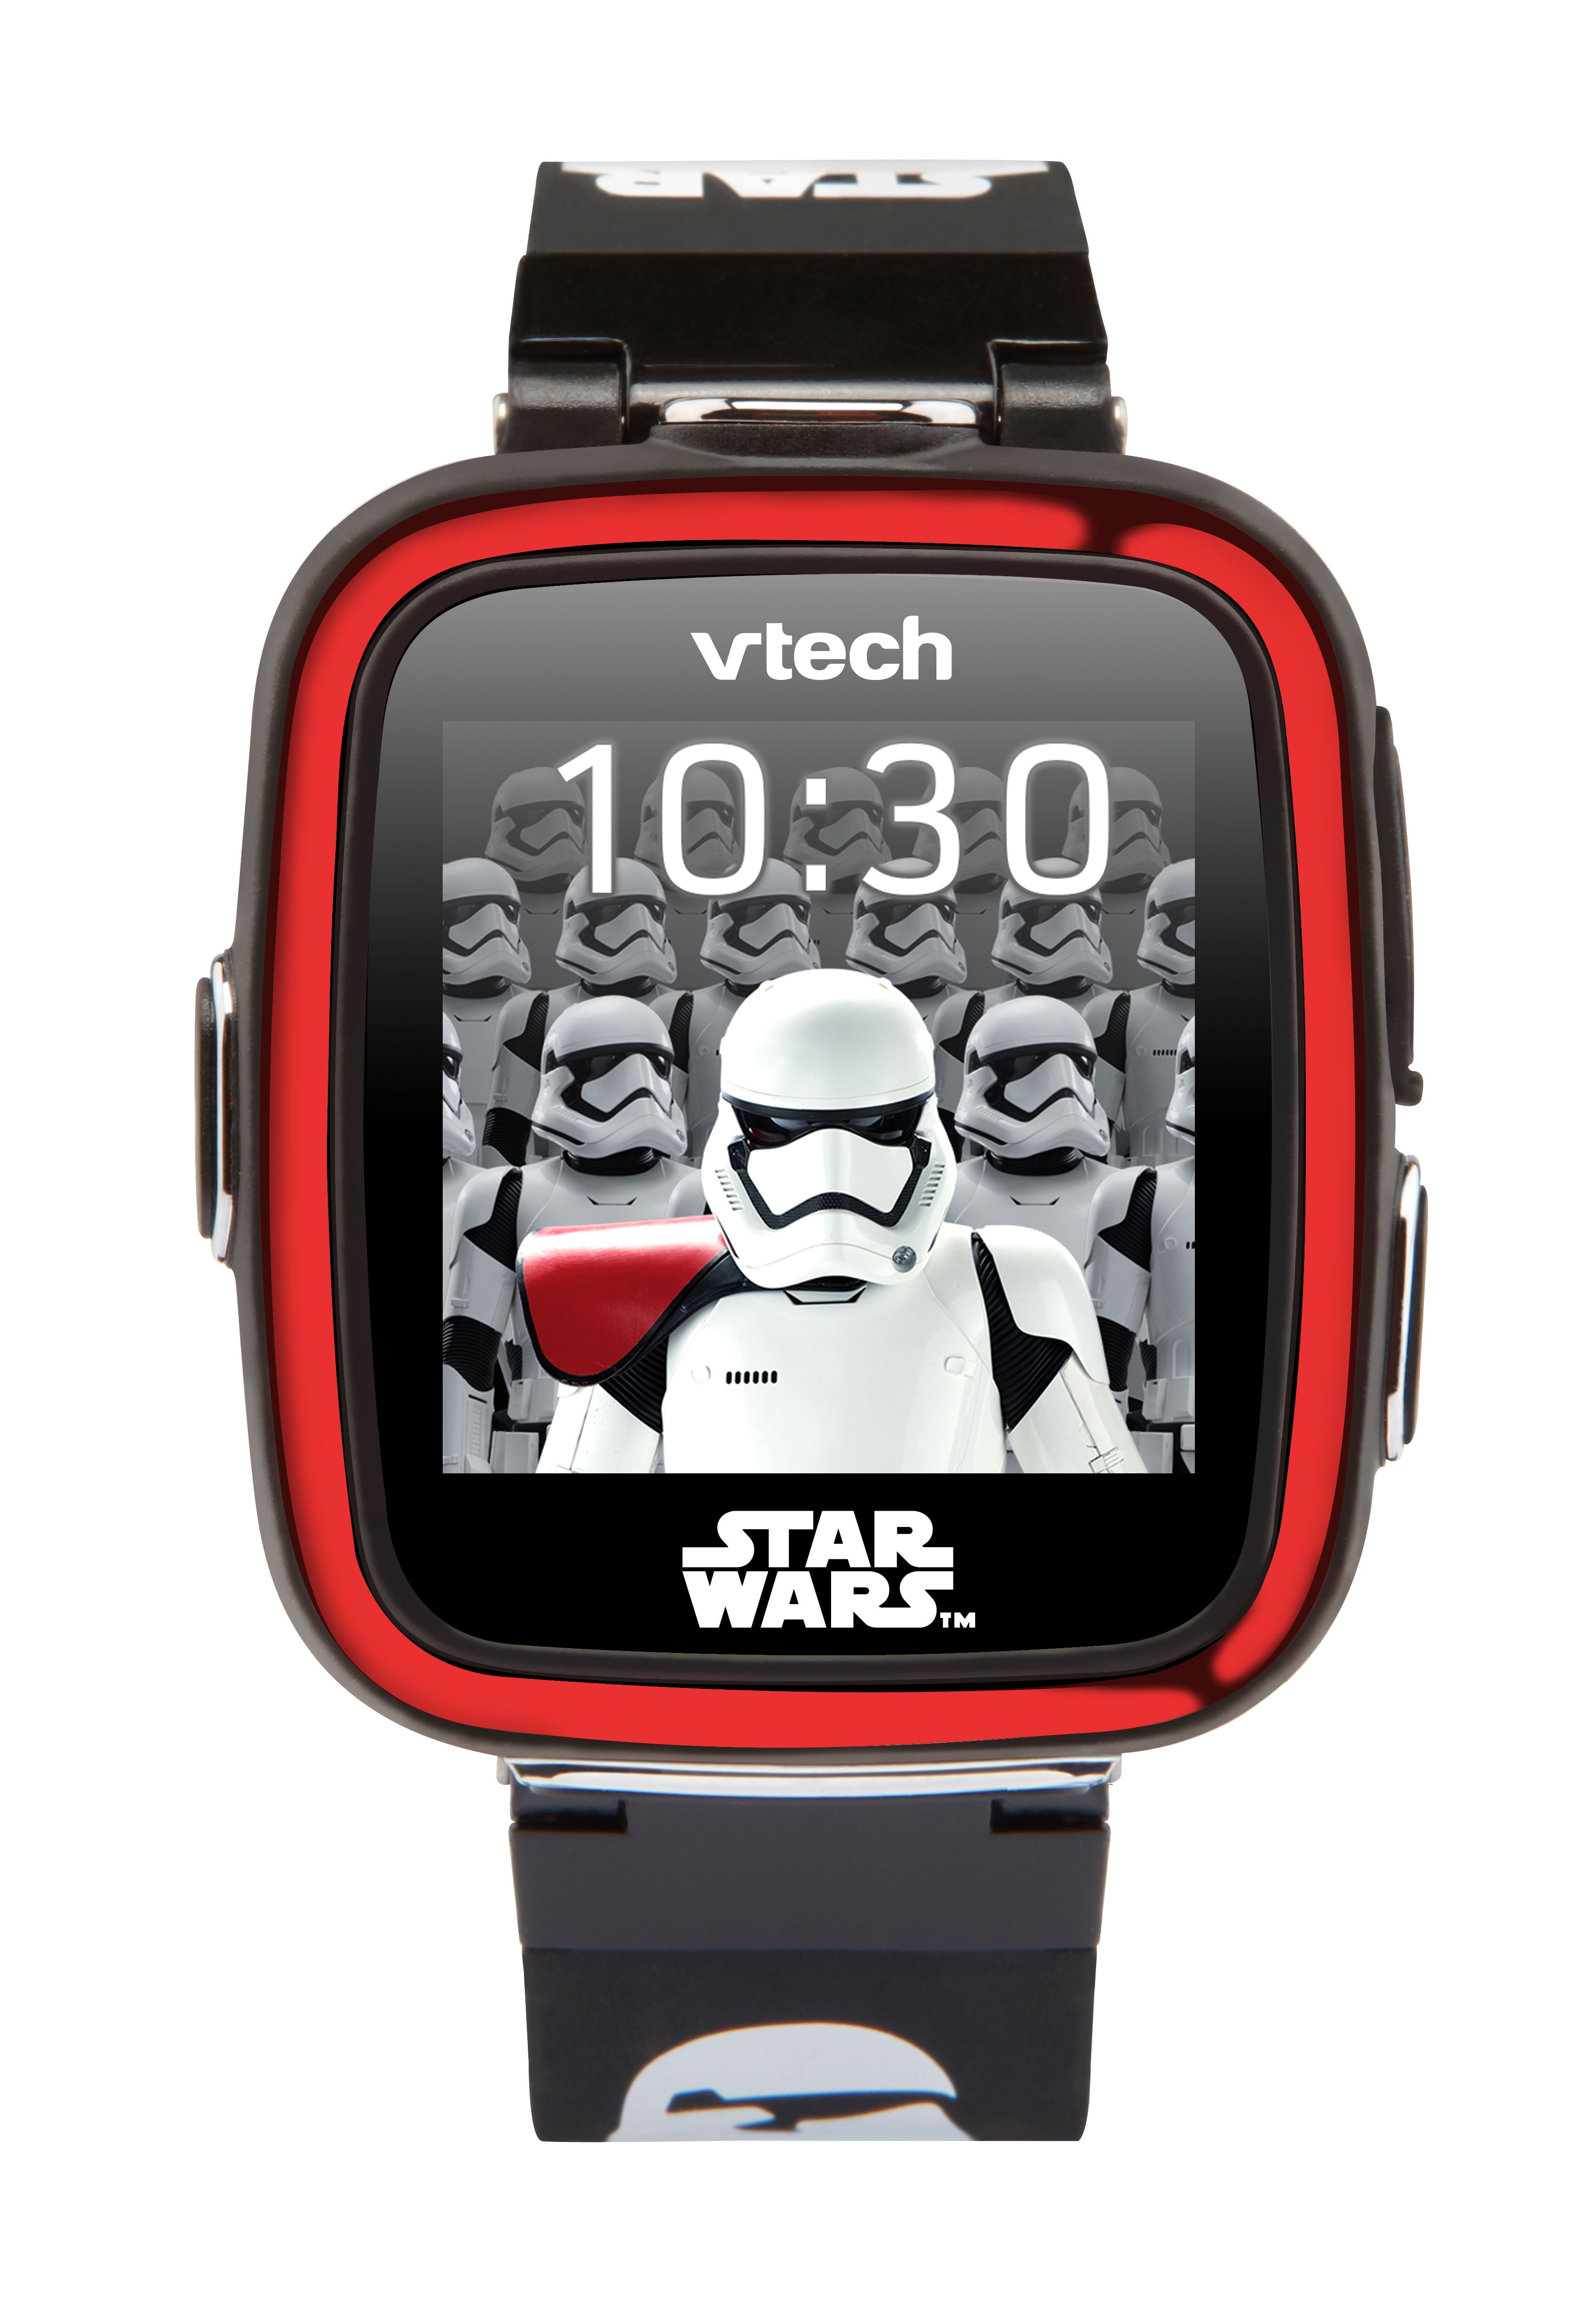 VTech Star Wars First Order Stormtrooper Smartwatch Walmart.com